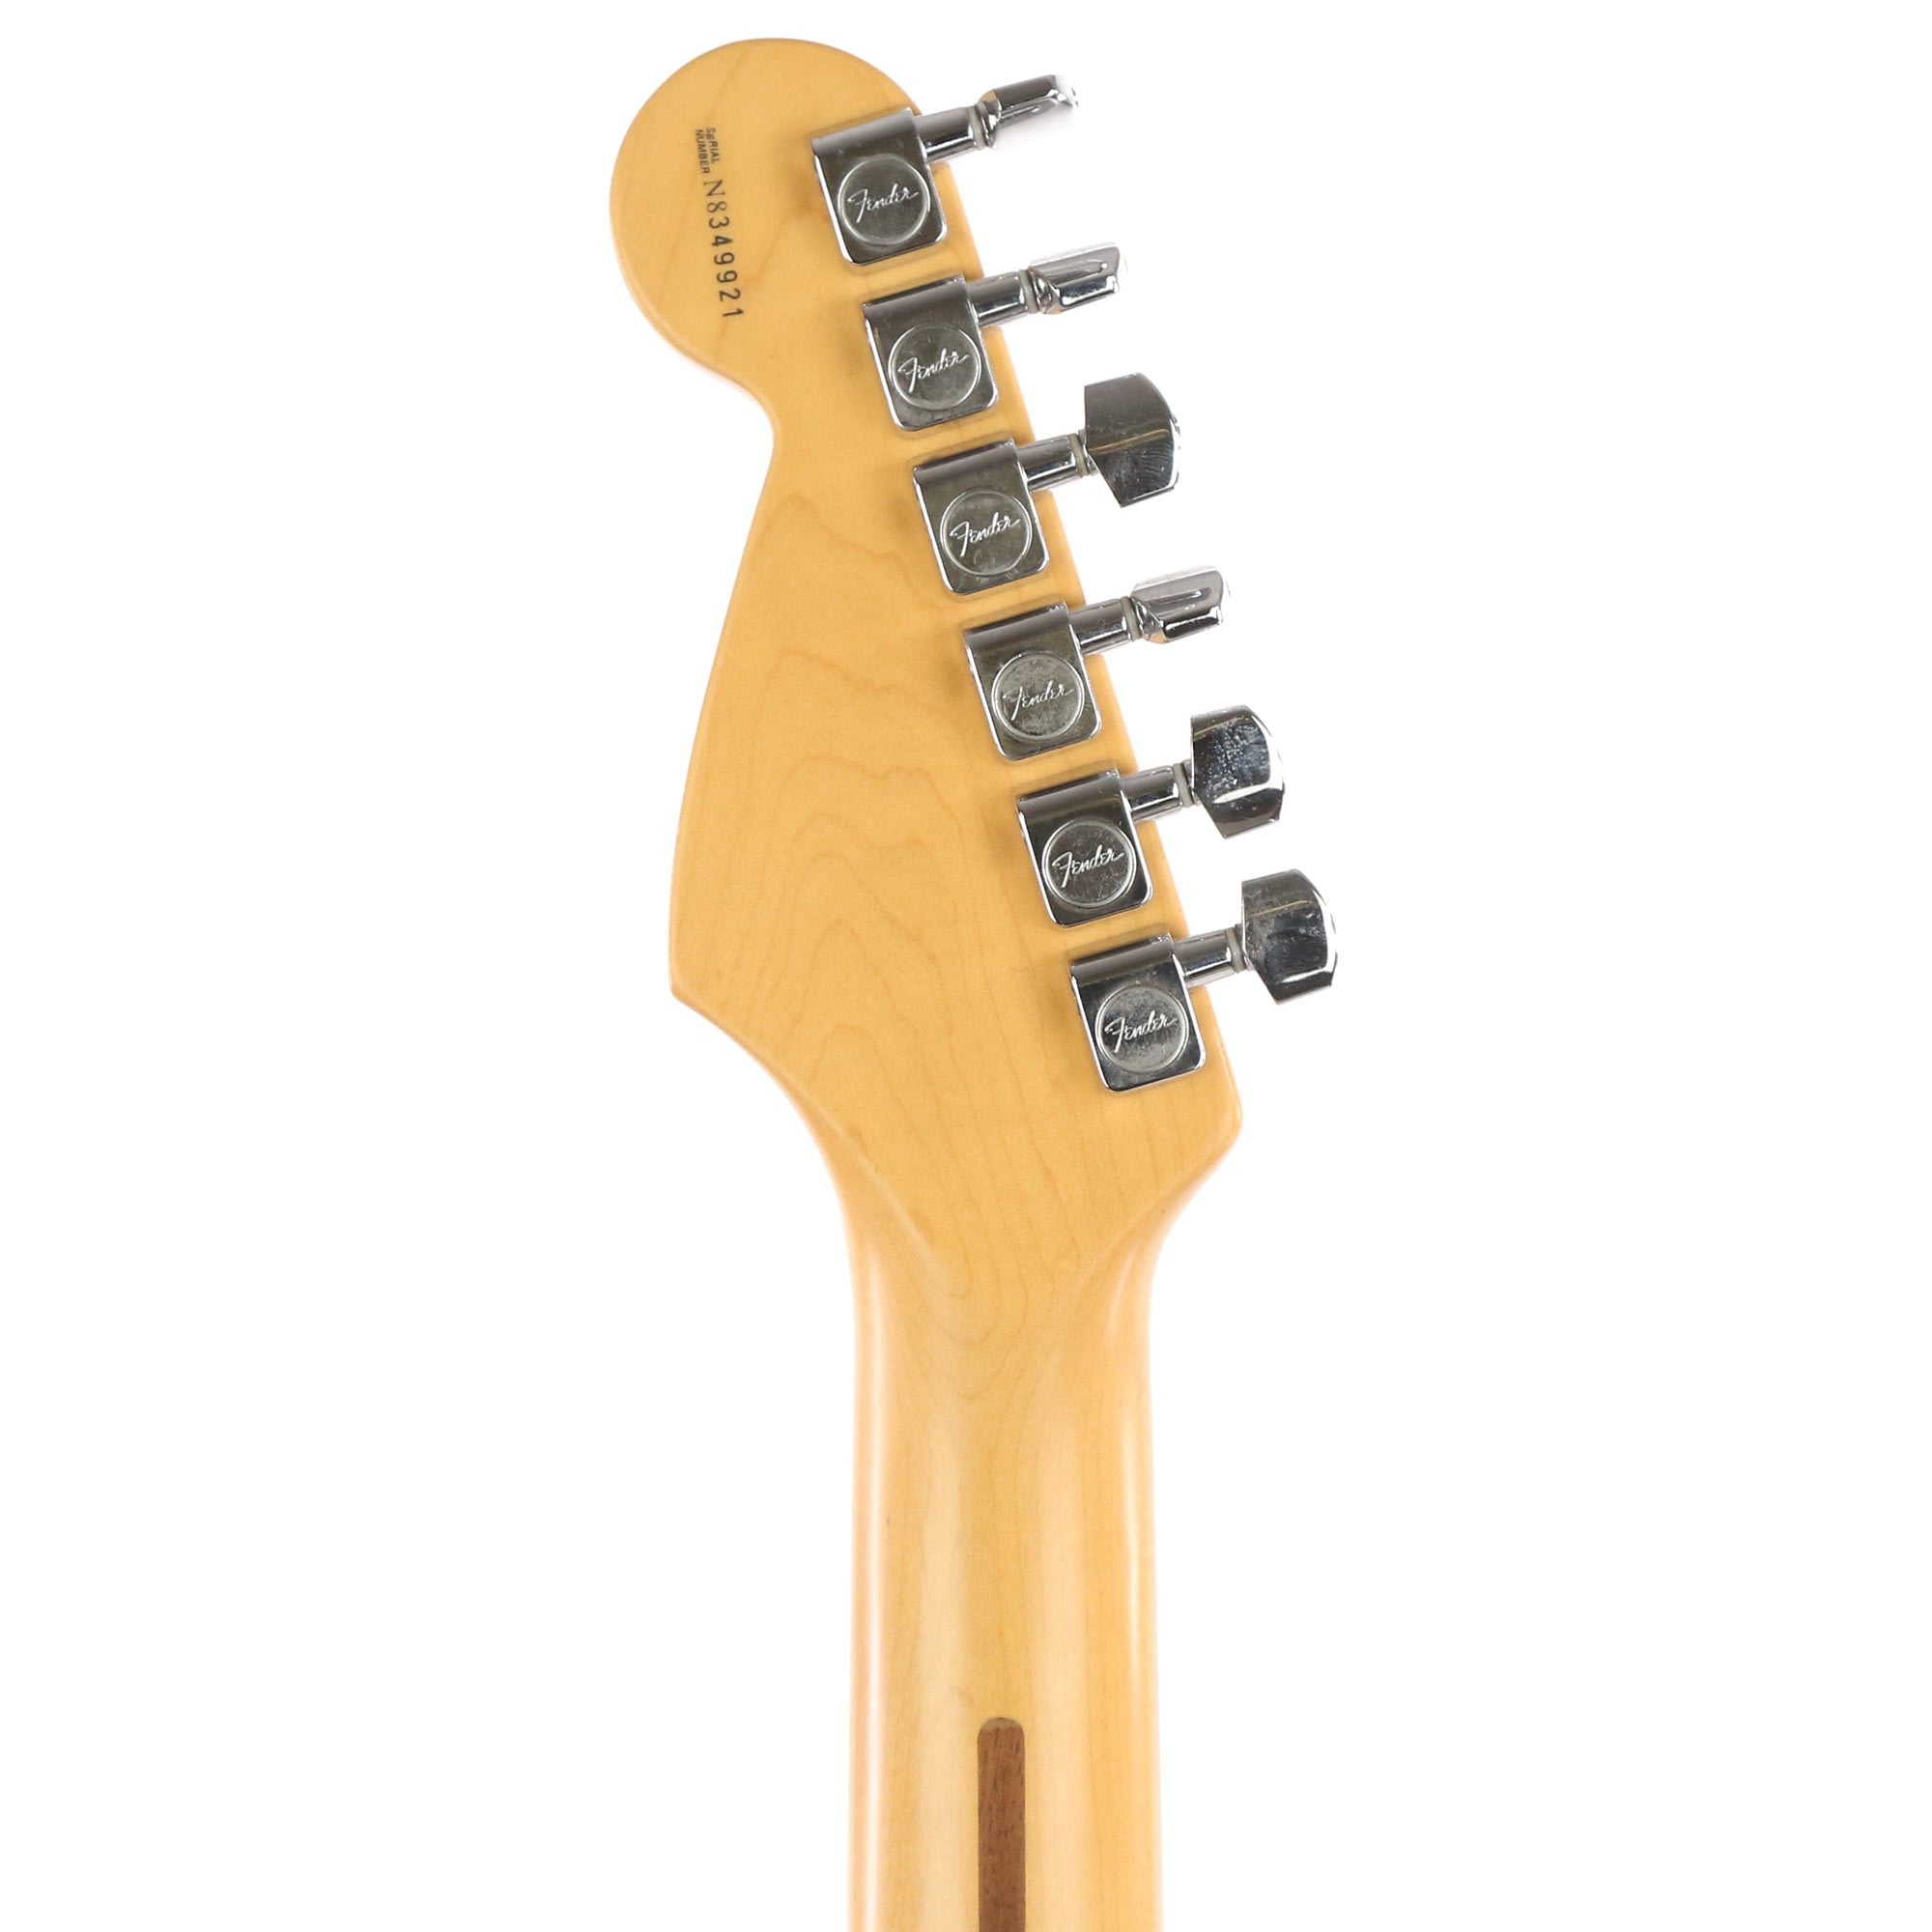 Fender American Standard Stratocaster 3-Tone Sunburst 1998 | The